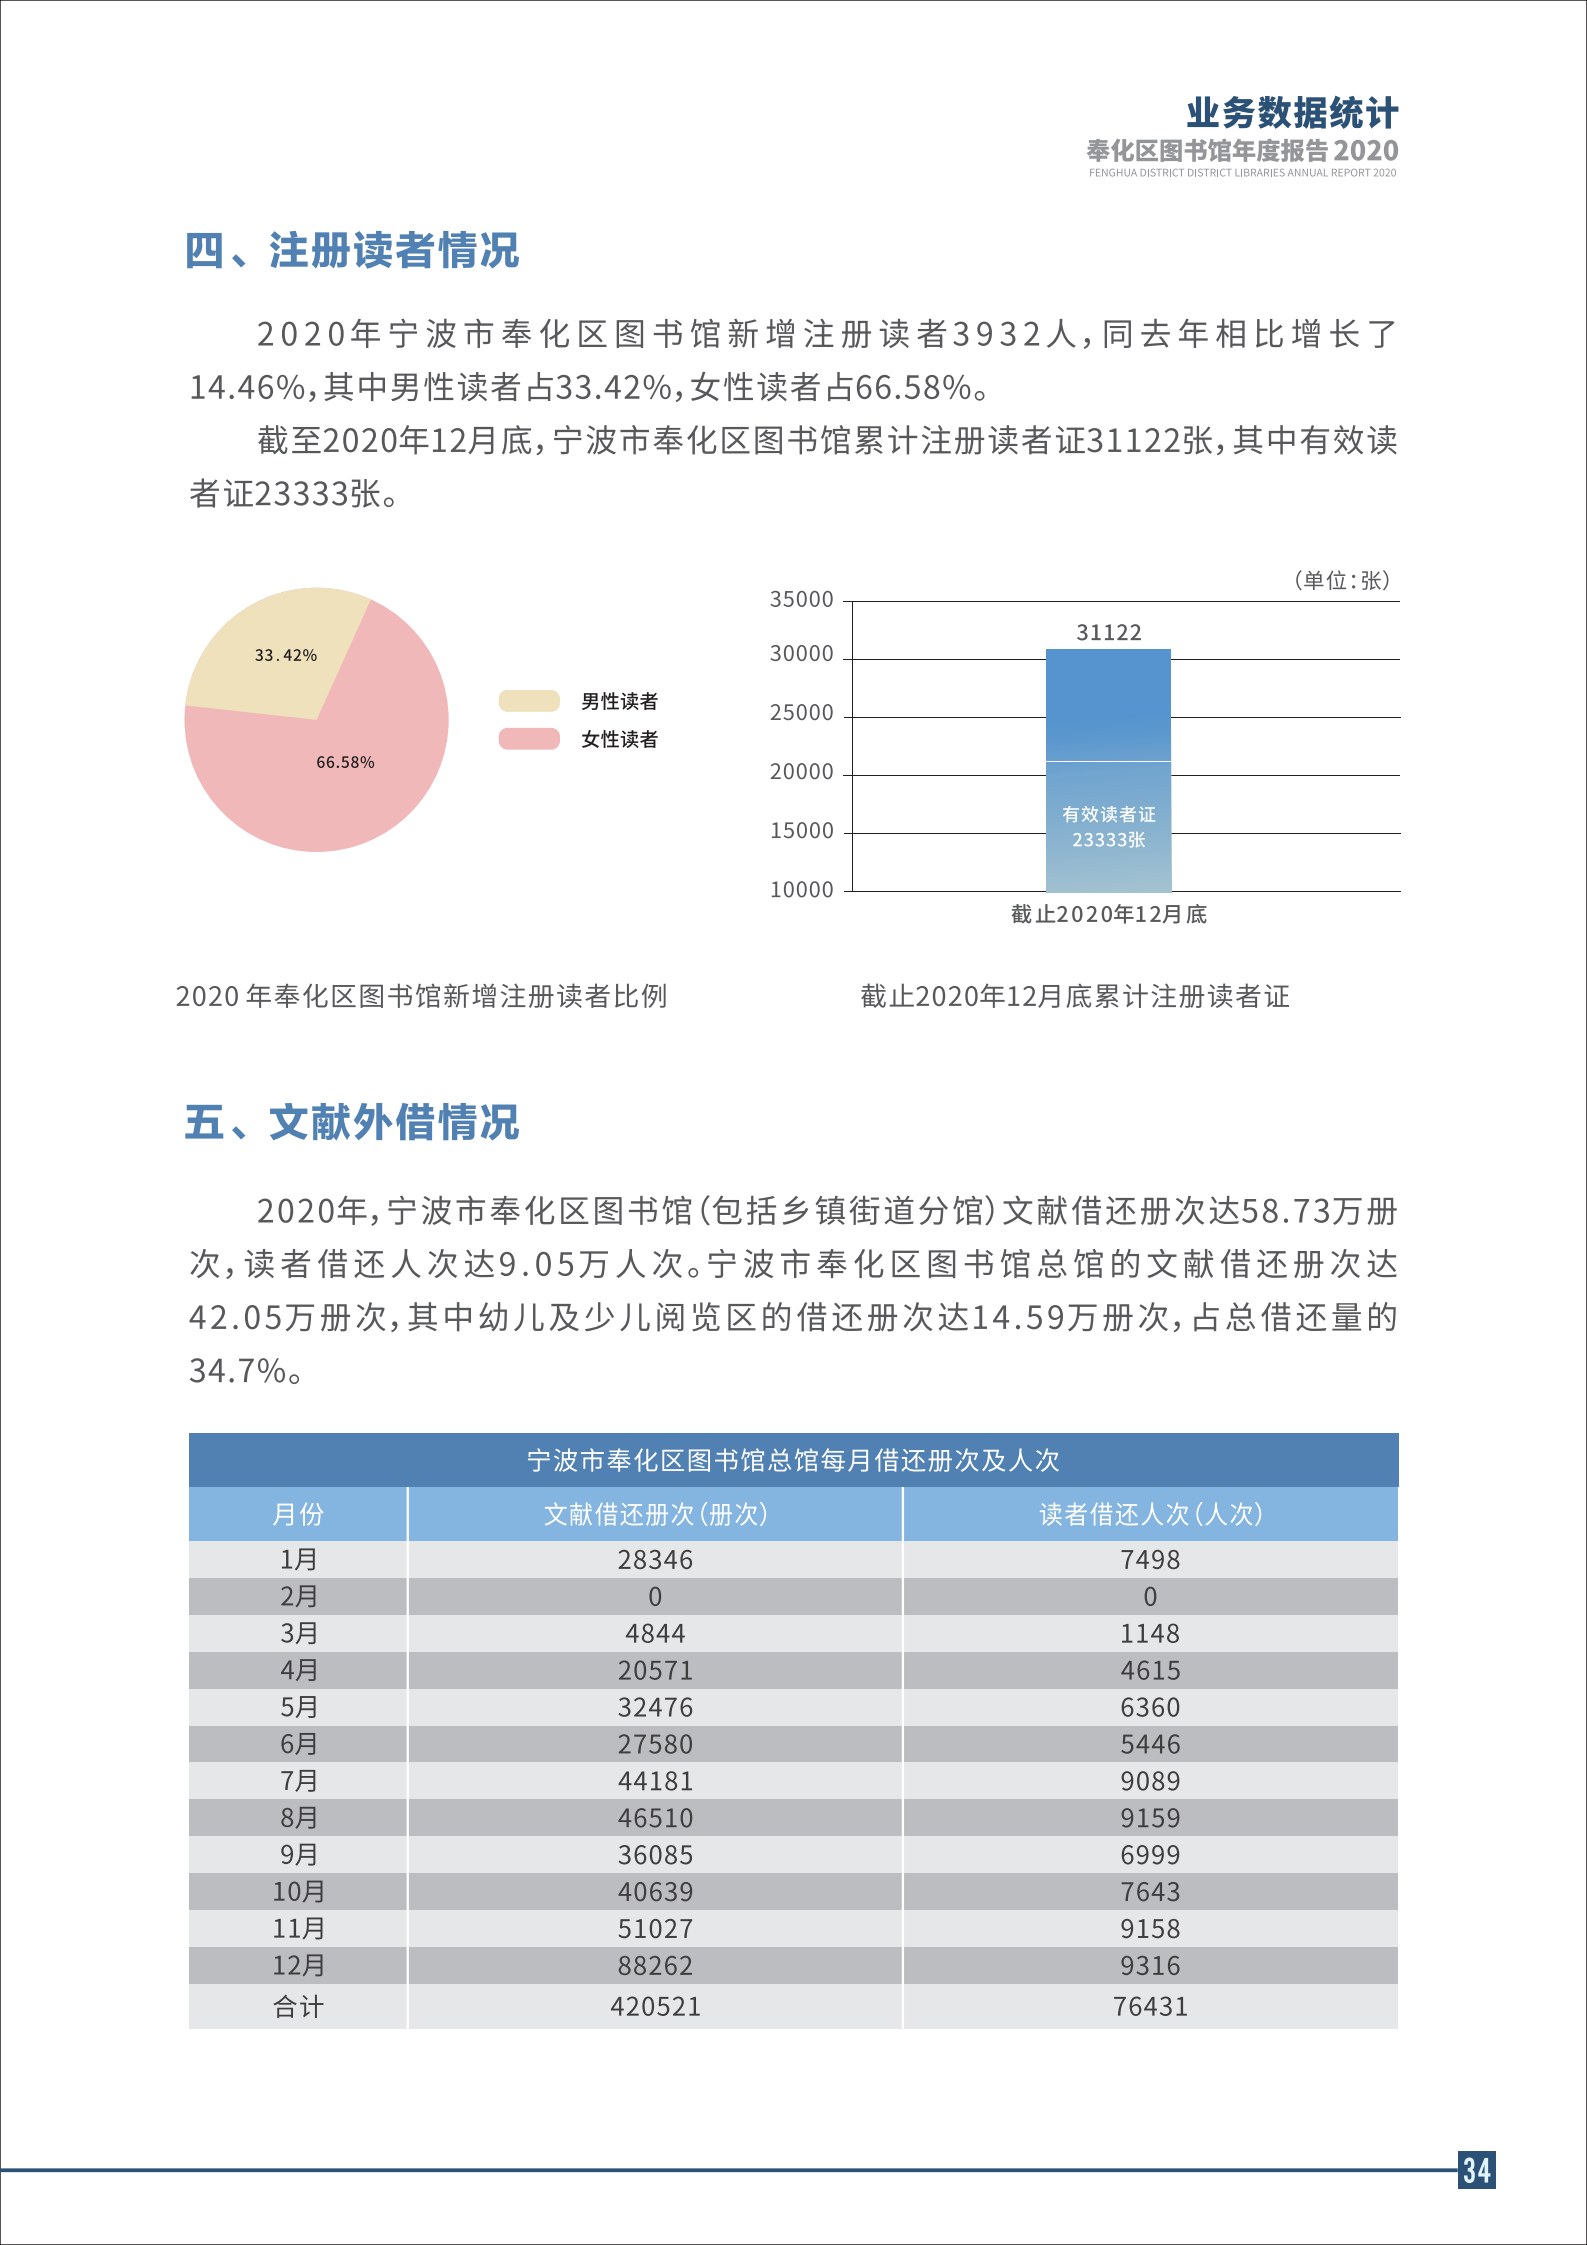 宁波市奉化区图书馆2020年年度报告 终稿_34.png